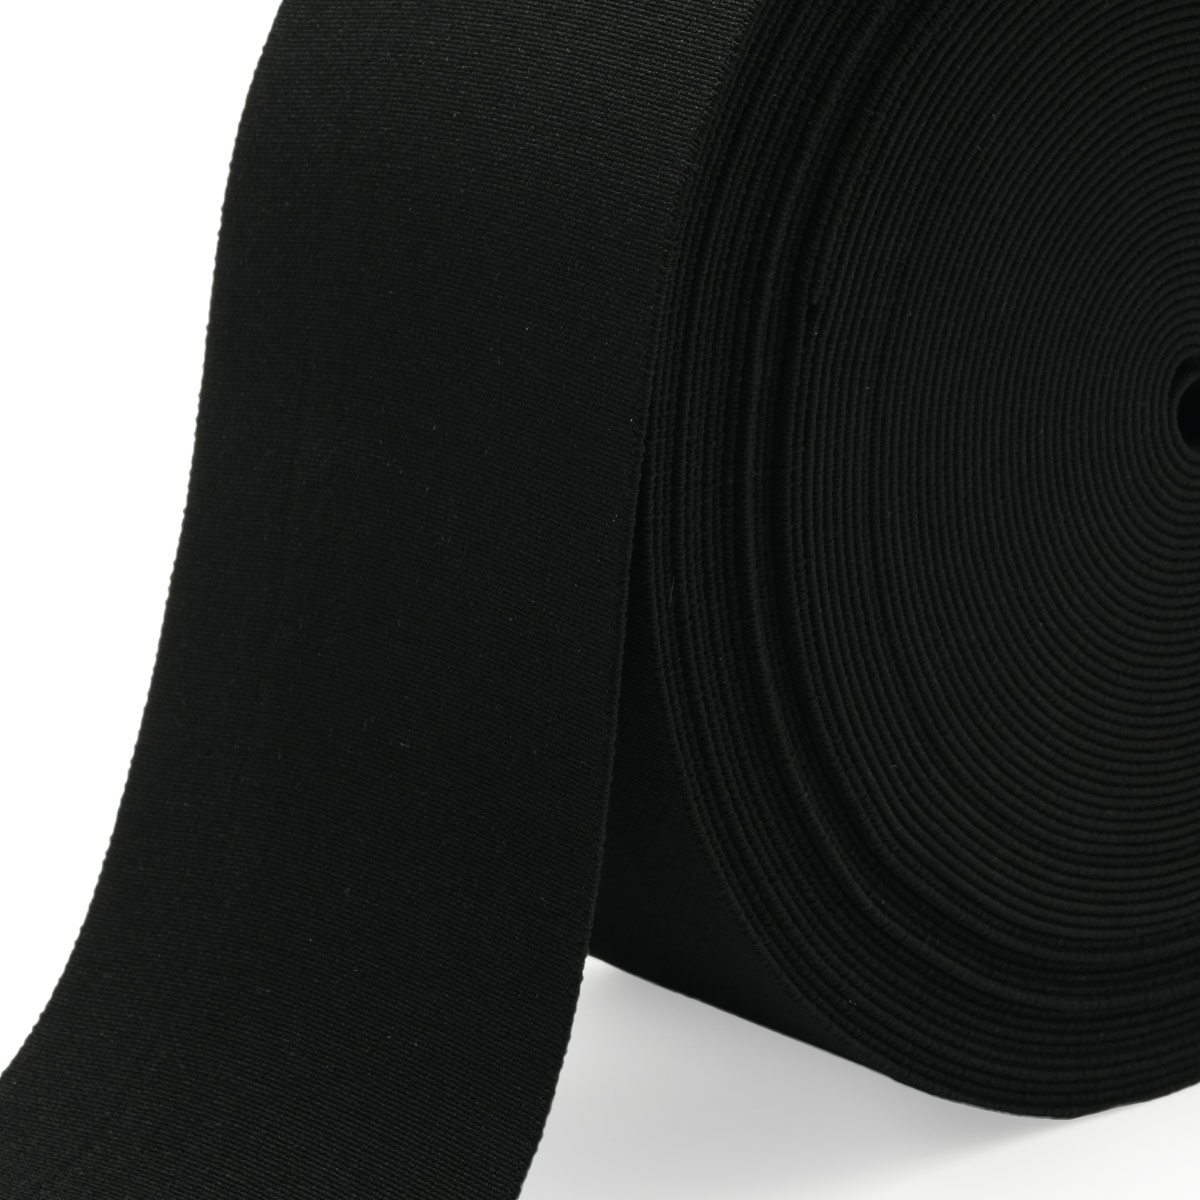 Лента Айрис резинка тканая эластичная башмачная для шитья челси чешек слипонов 100 мм 20 м черная - фото 4